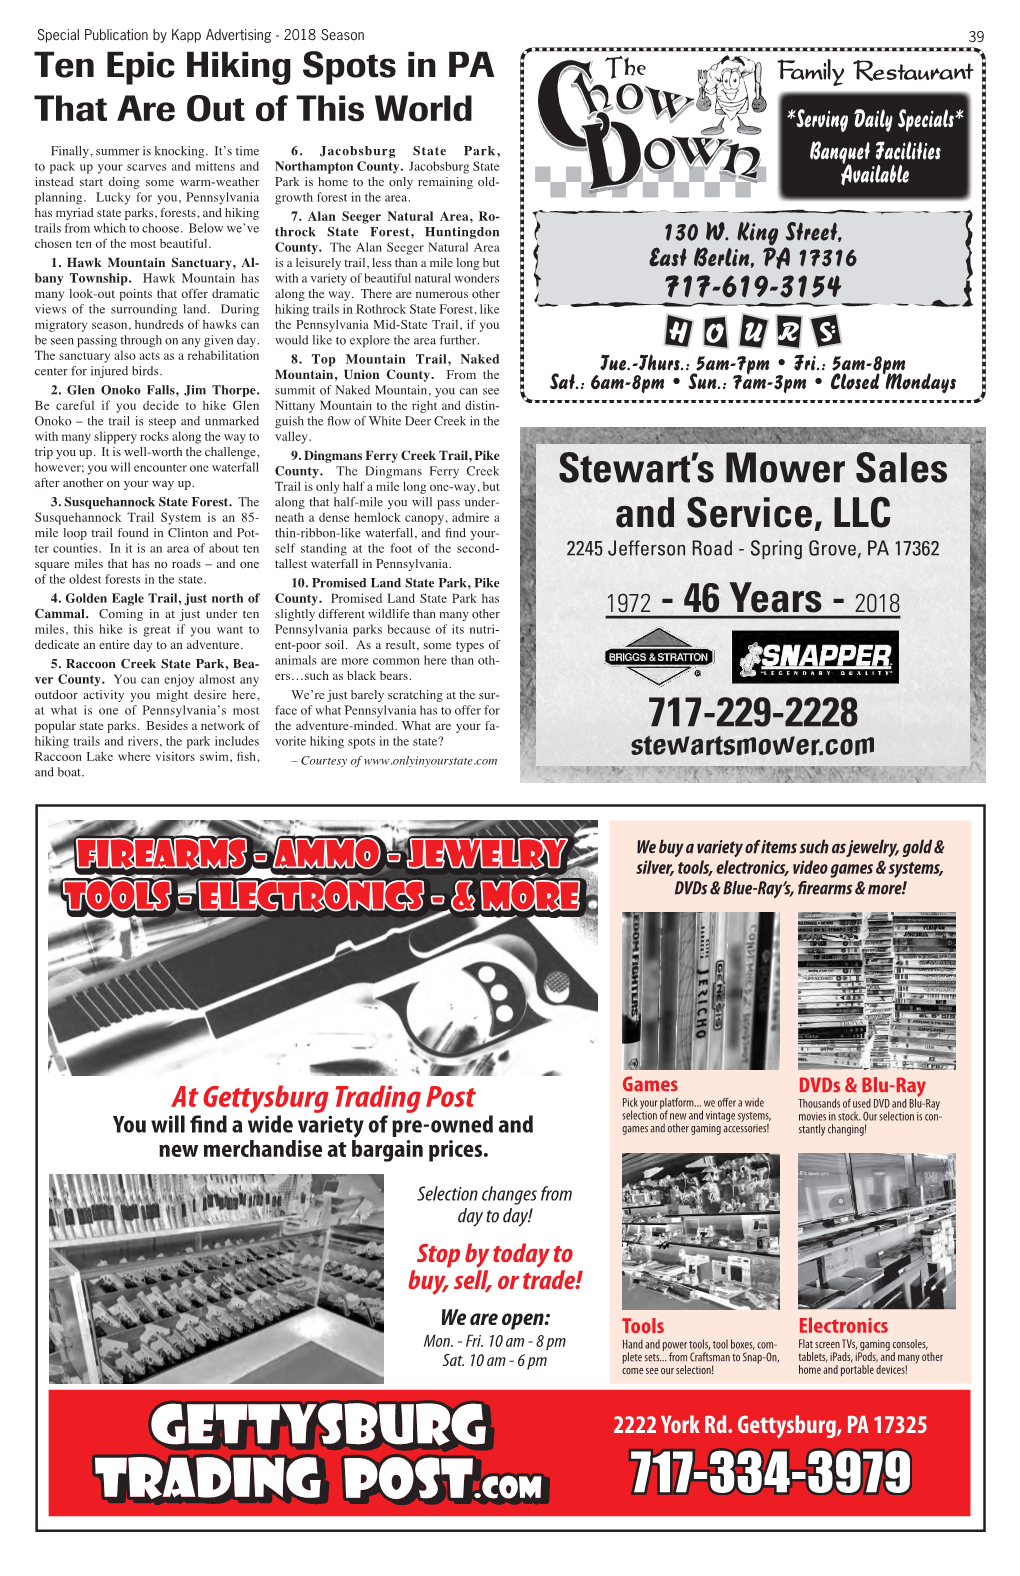 Stewart's Mower Sales and Service, LLC 1972